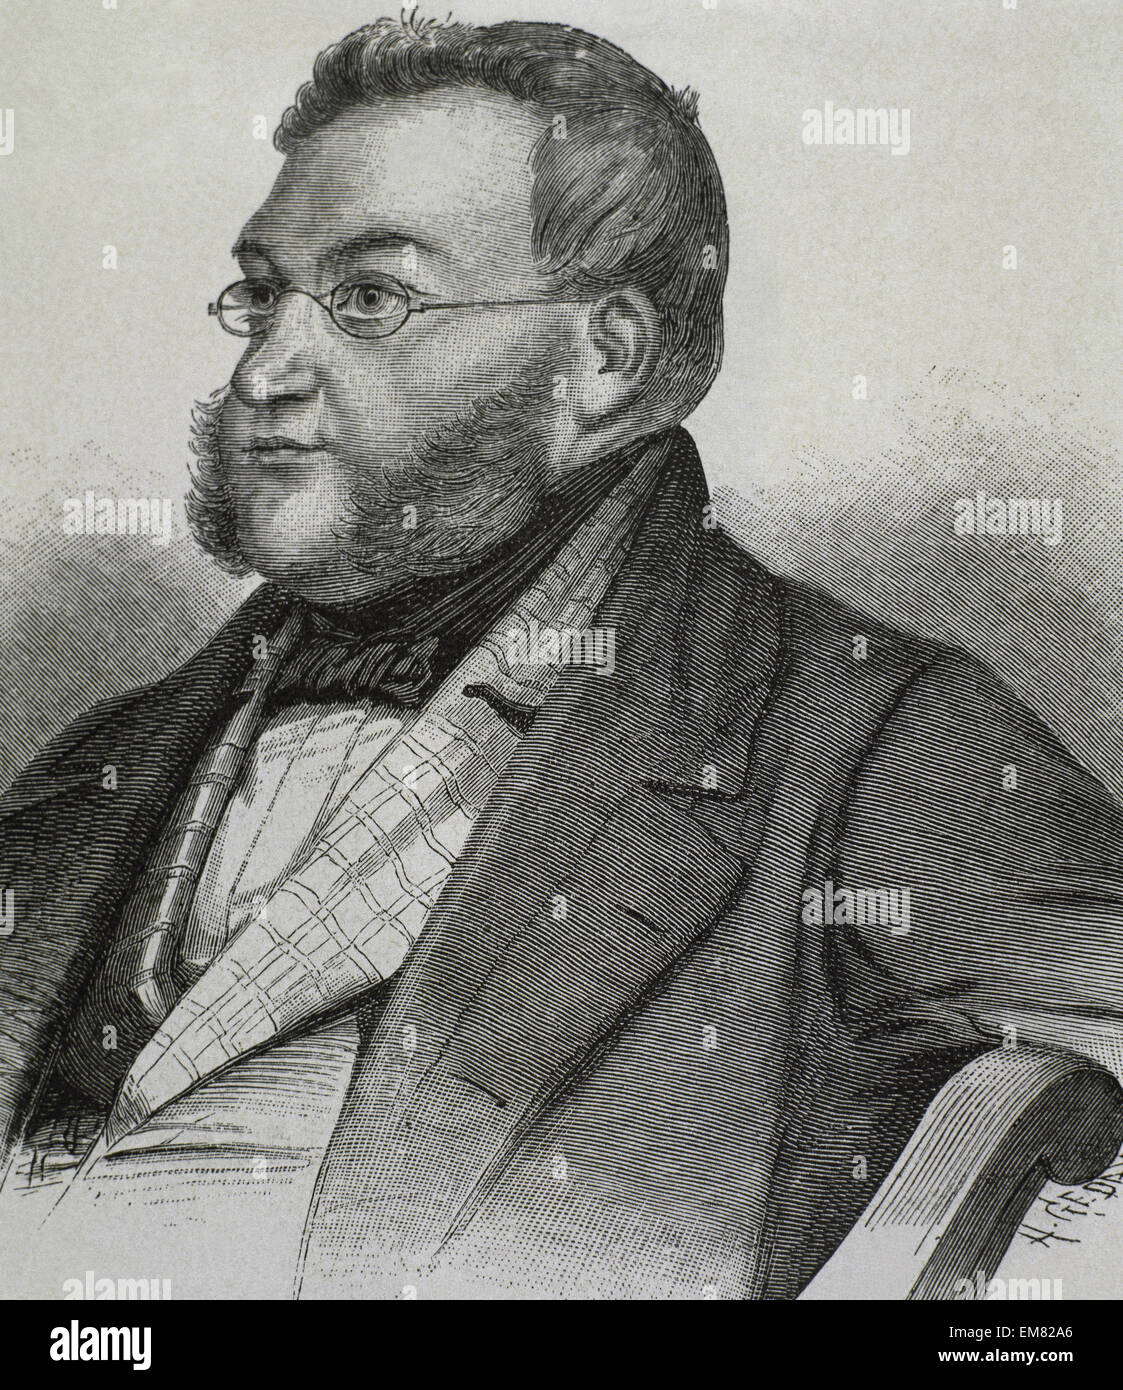 Georg von Vincke (1811 - 1875). Homme politique prussien, dirigeant, propriétaire et de l'aristocrate Vincke famille. Gravure, 1885. Portrait. Banque D'Images